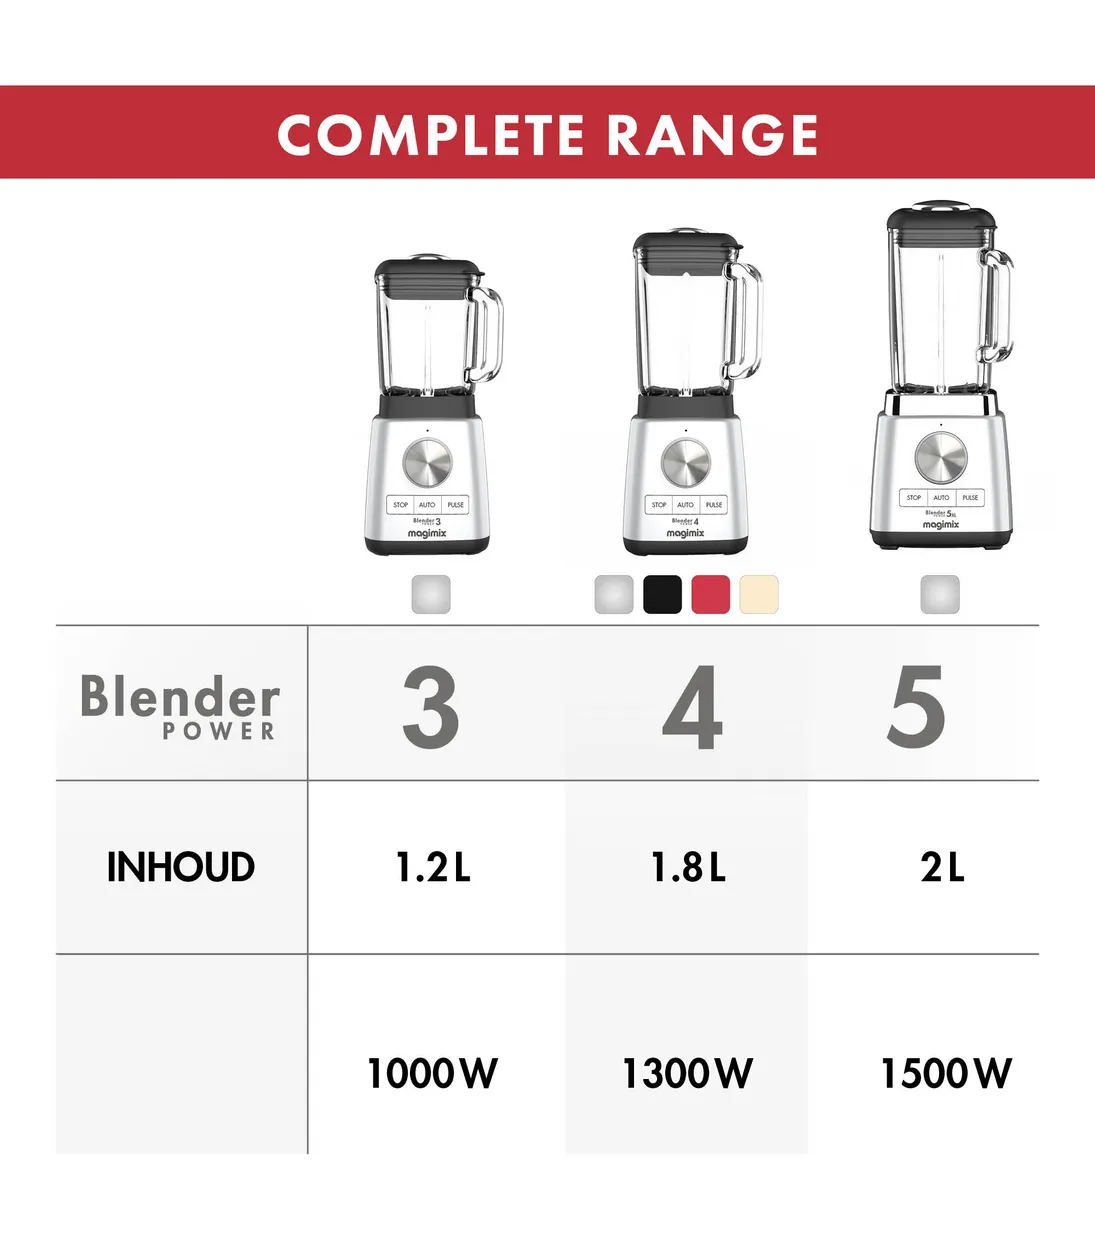 Blender Power 3 - 1,2 liter